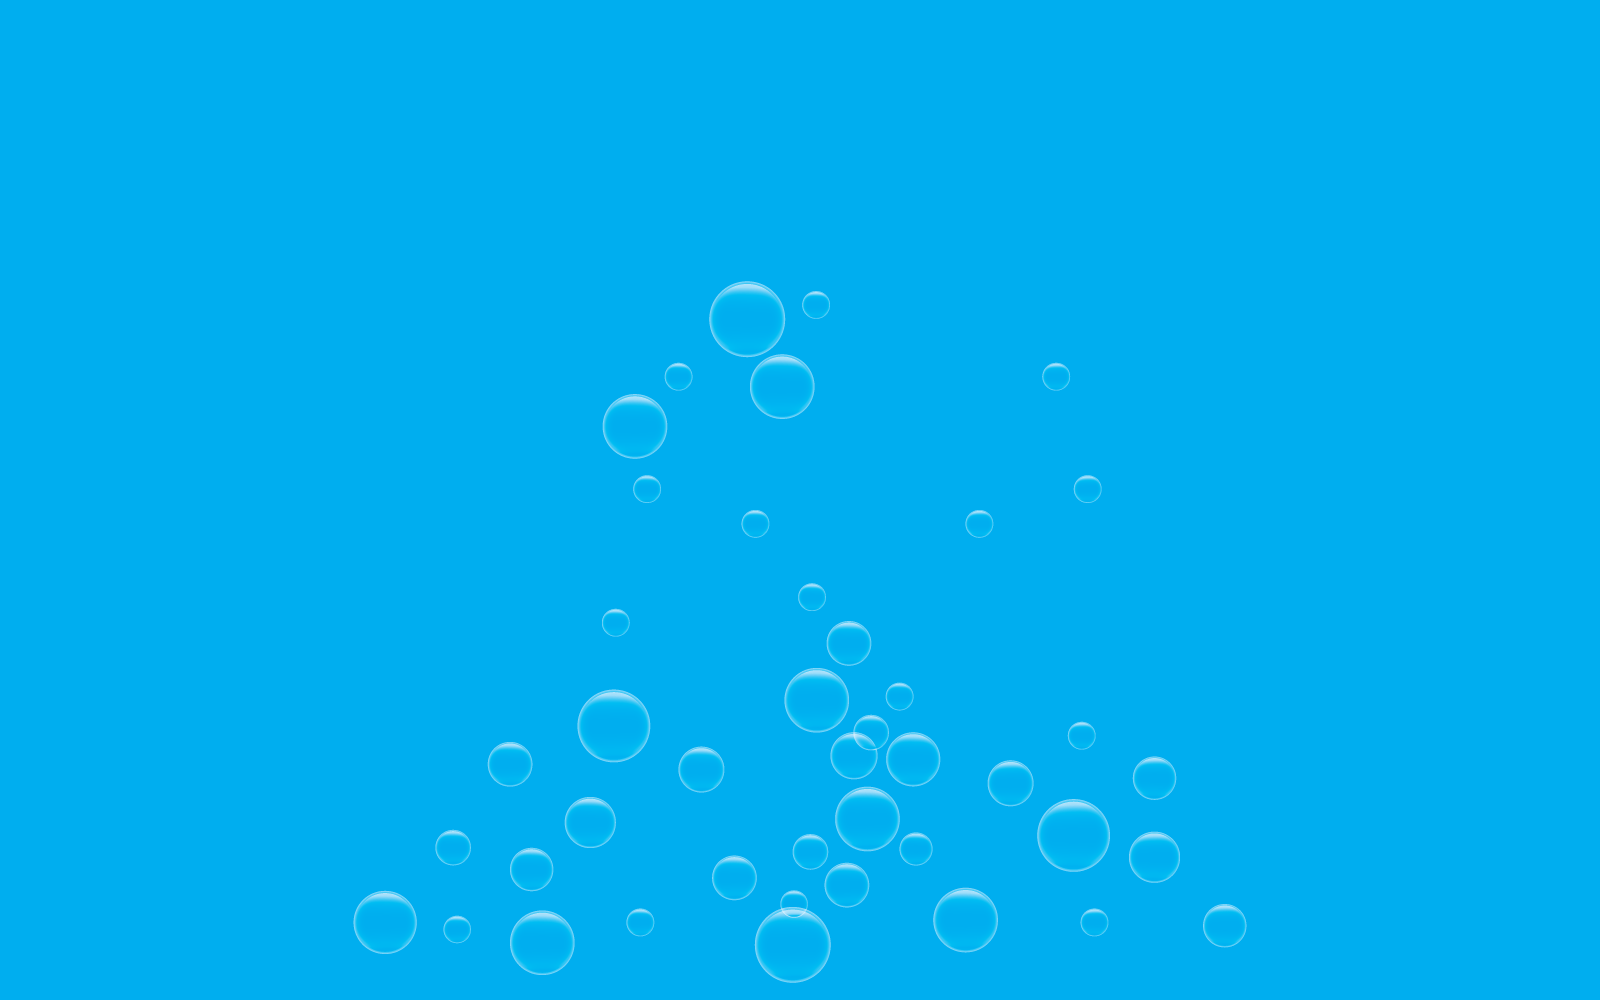 Natural realistic bubble icon illustration vector design template